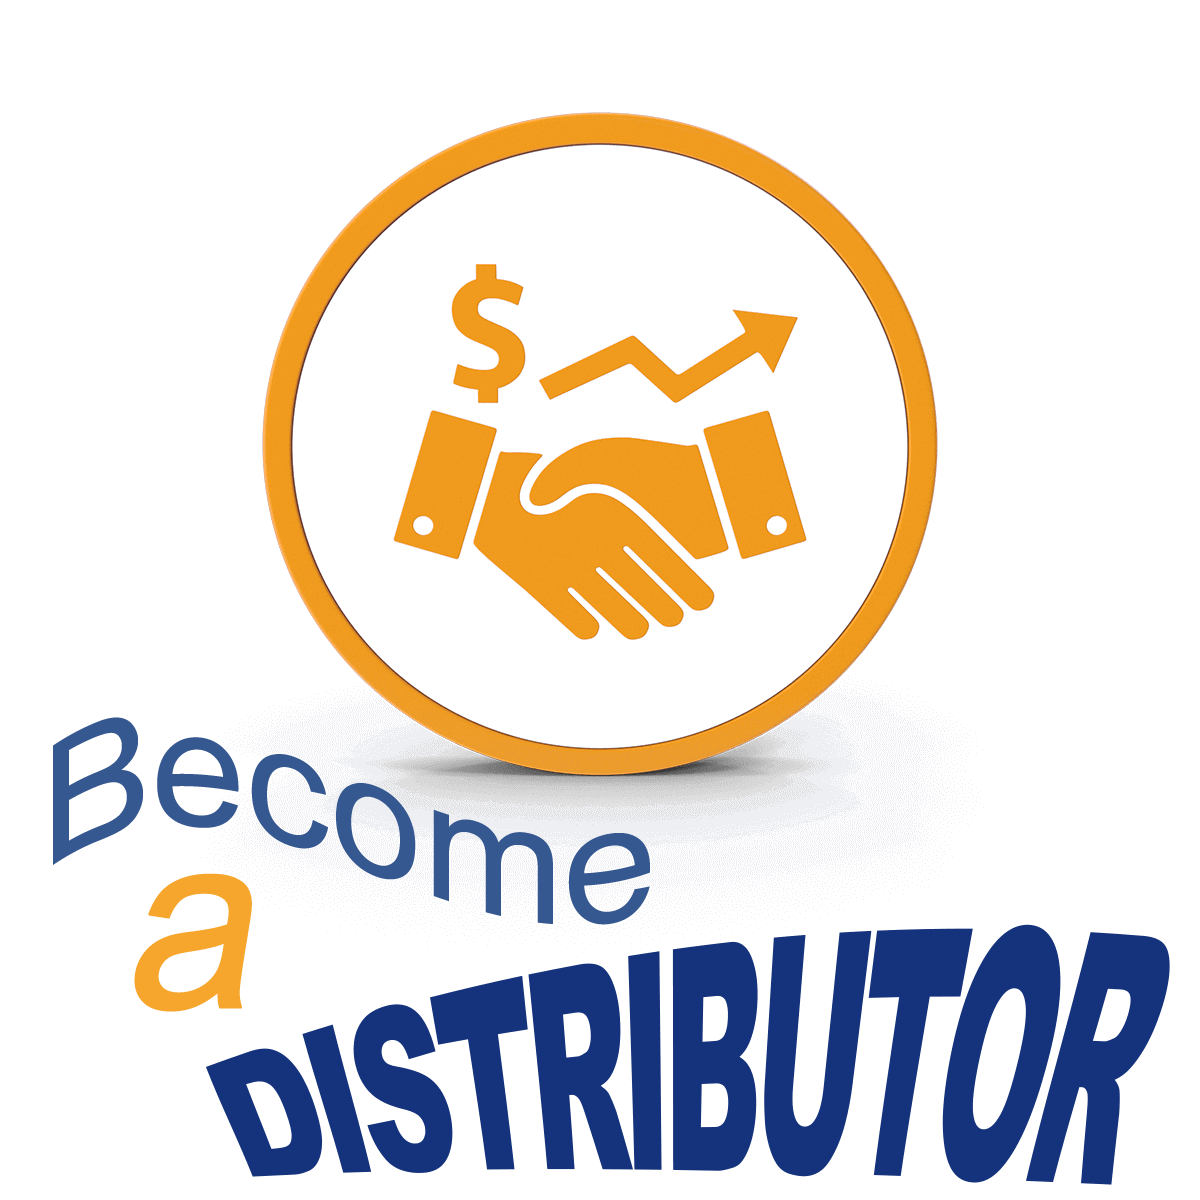 Become a distributor